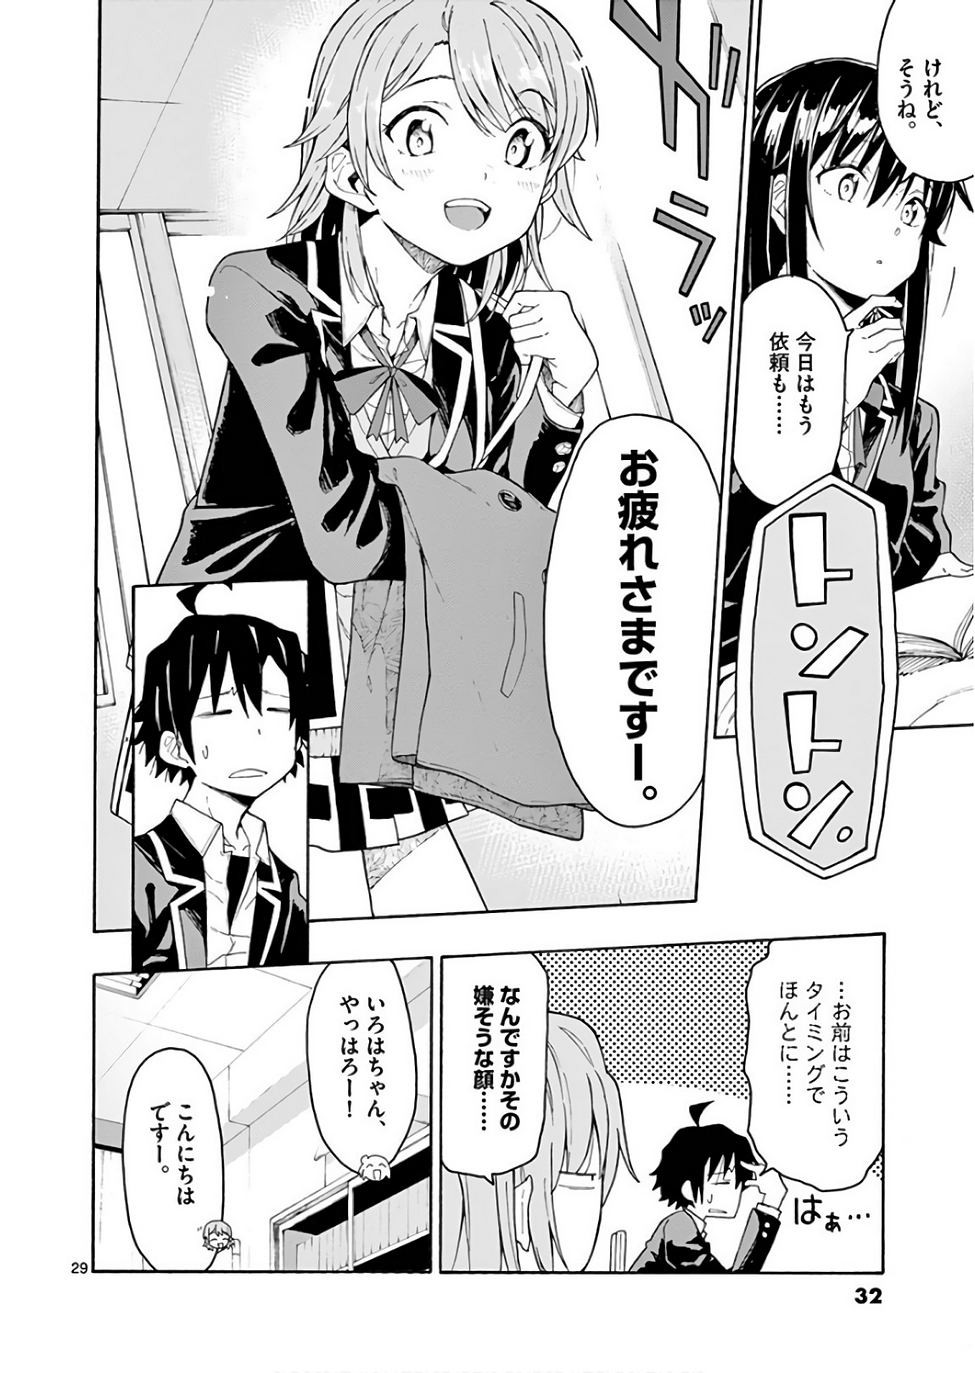 Yahari Ore no Seishun Rabukome wa Machigatte Iru. @ Comic - Chapter 71 - Page 32